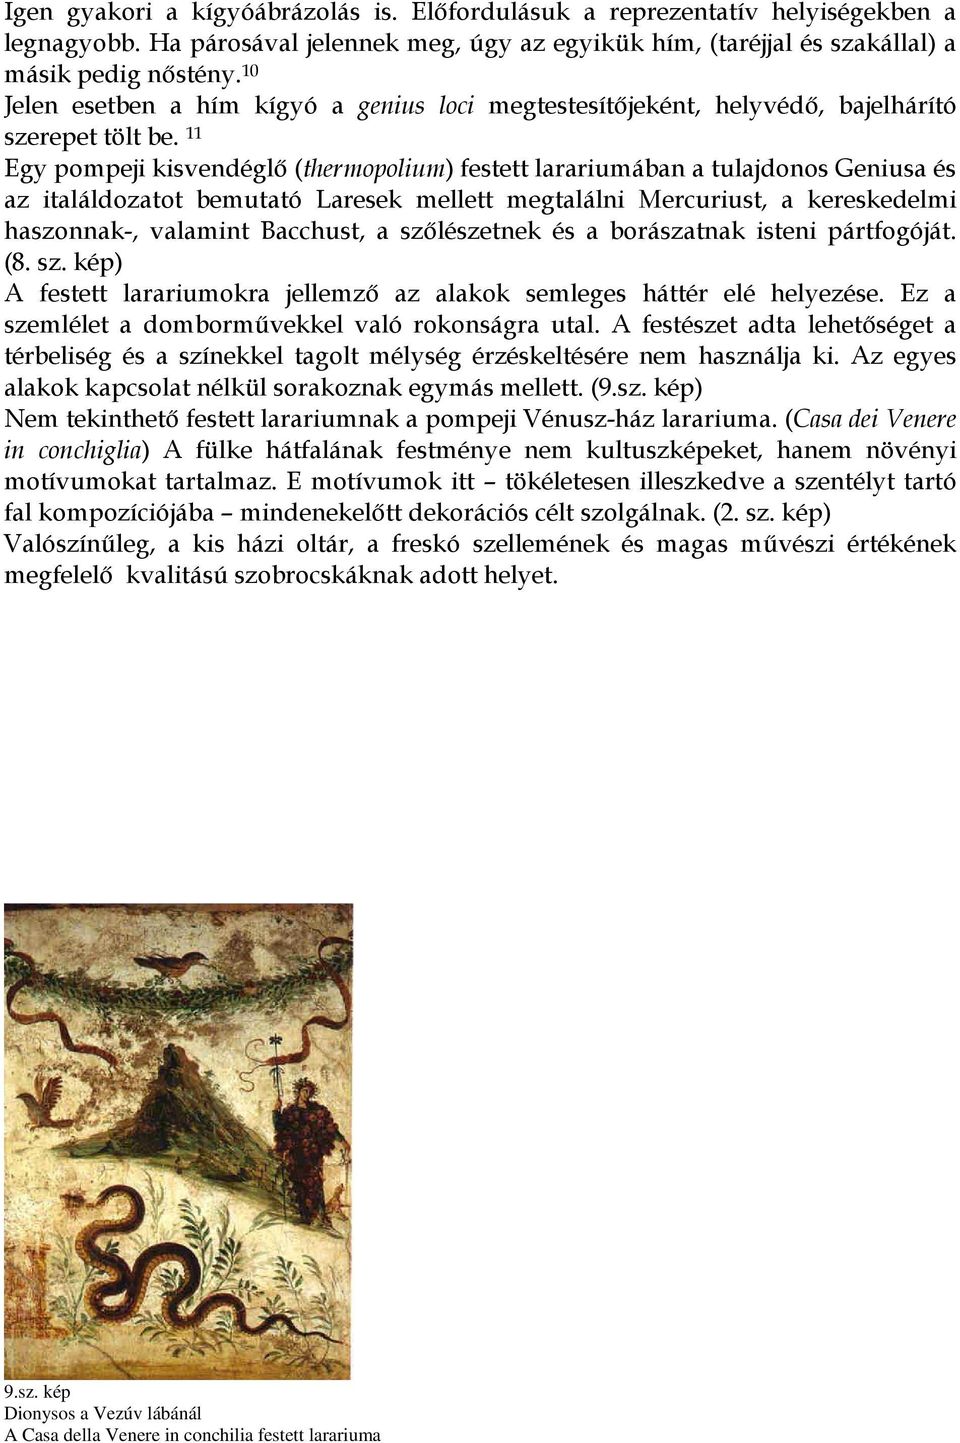 11 Egy pompeji kisvendéglő (thermopolium) festett larariumában a tulajdonos Geniusa és az italáldozatot bemutató Laresek mellett megtalálni Mercuriust, a kereskedelmi haszonnak-, valamint Bacchust, a